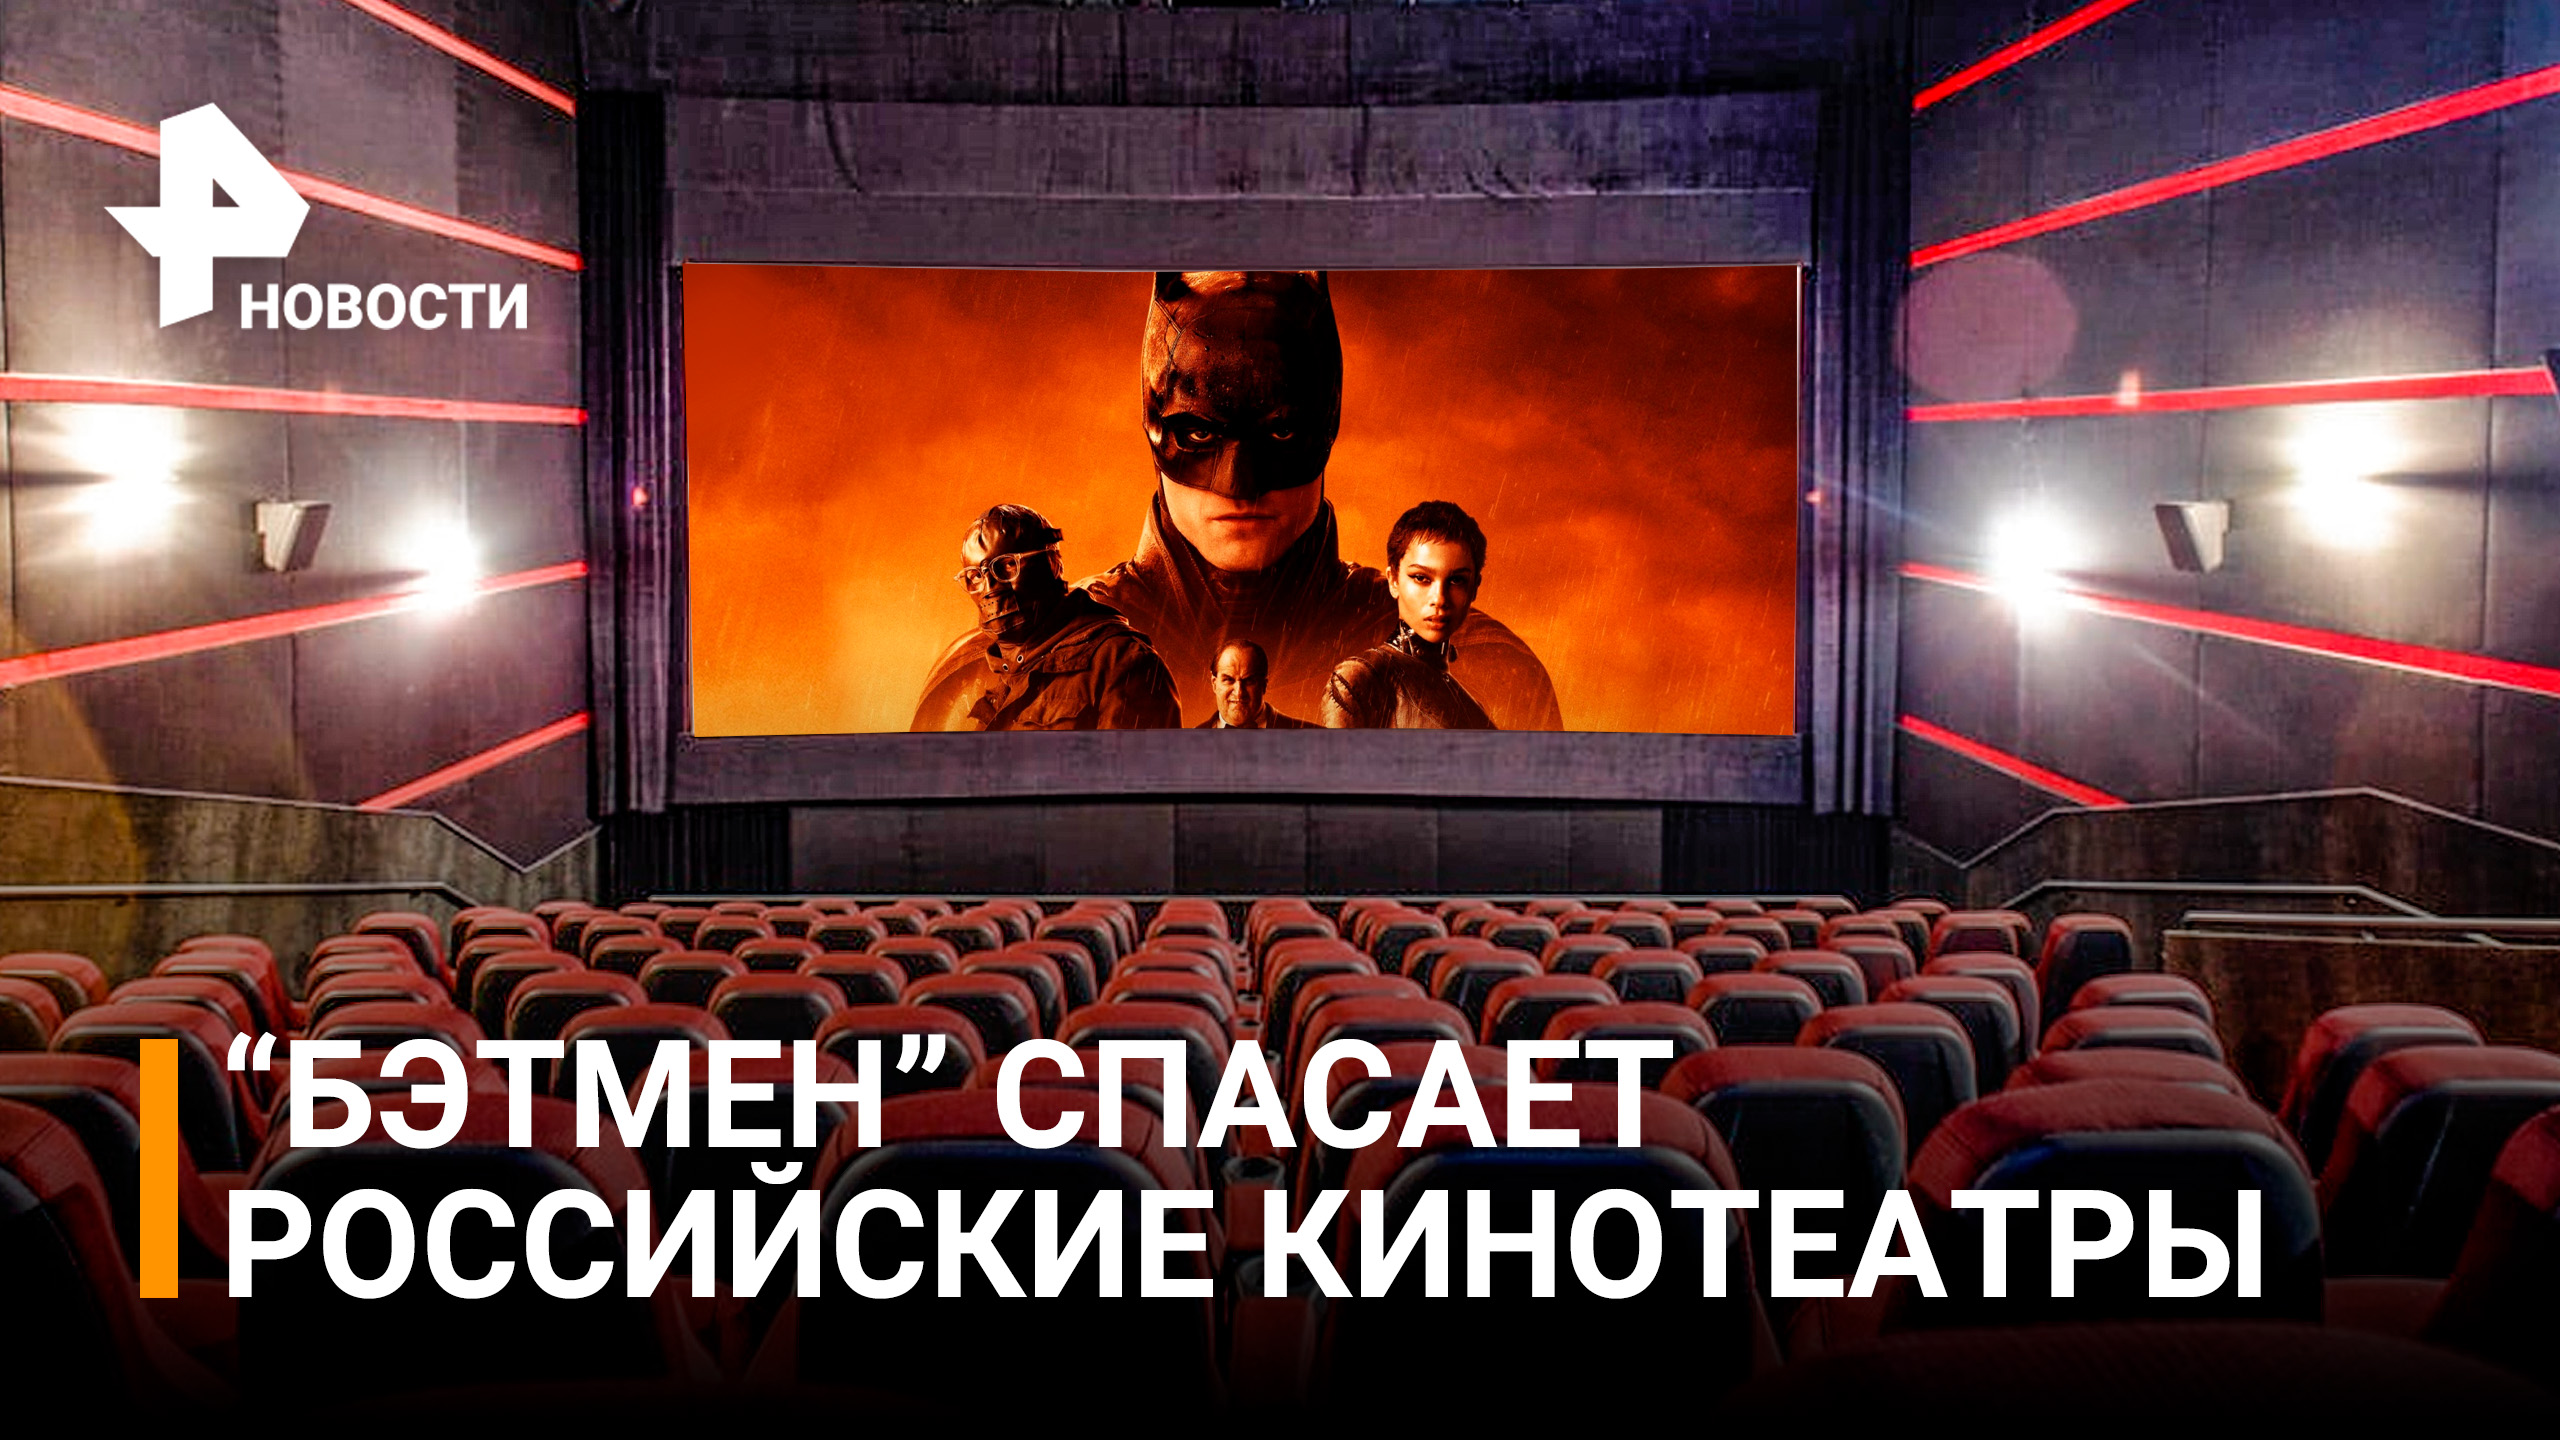 "Бэтмен" уже в кино! Как организовали показ и спасет ли фильм российские кинотеатры / РЕН Новости